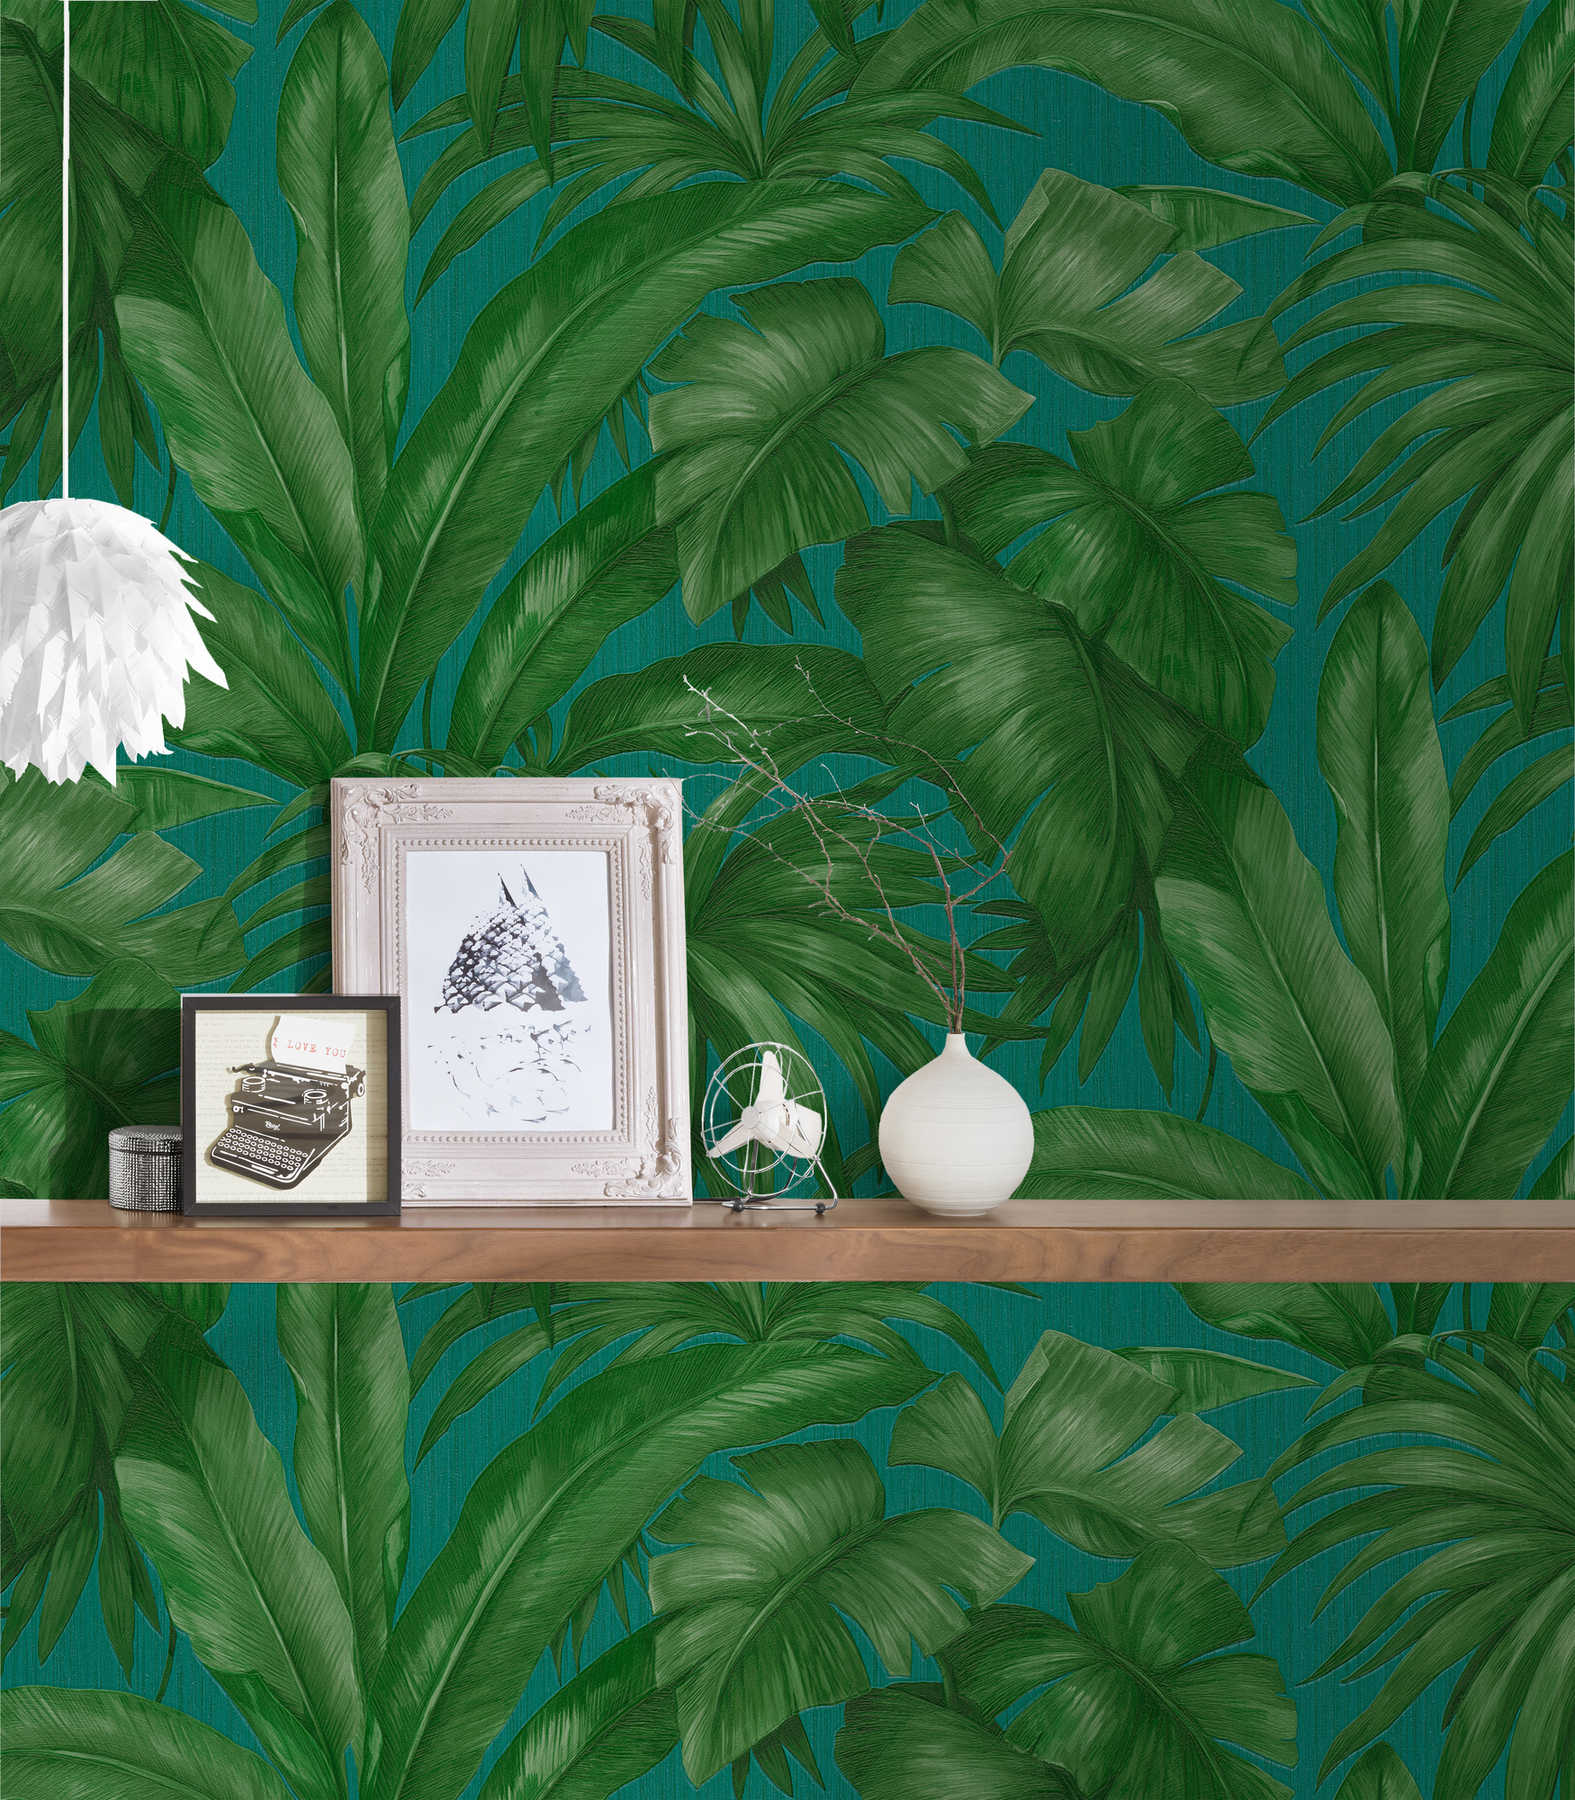             VERSACE jungle behang met palmbladeren motief - groen
        